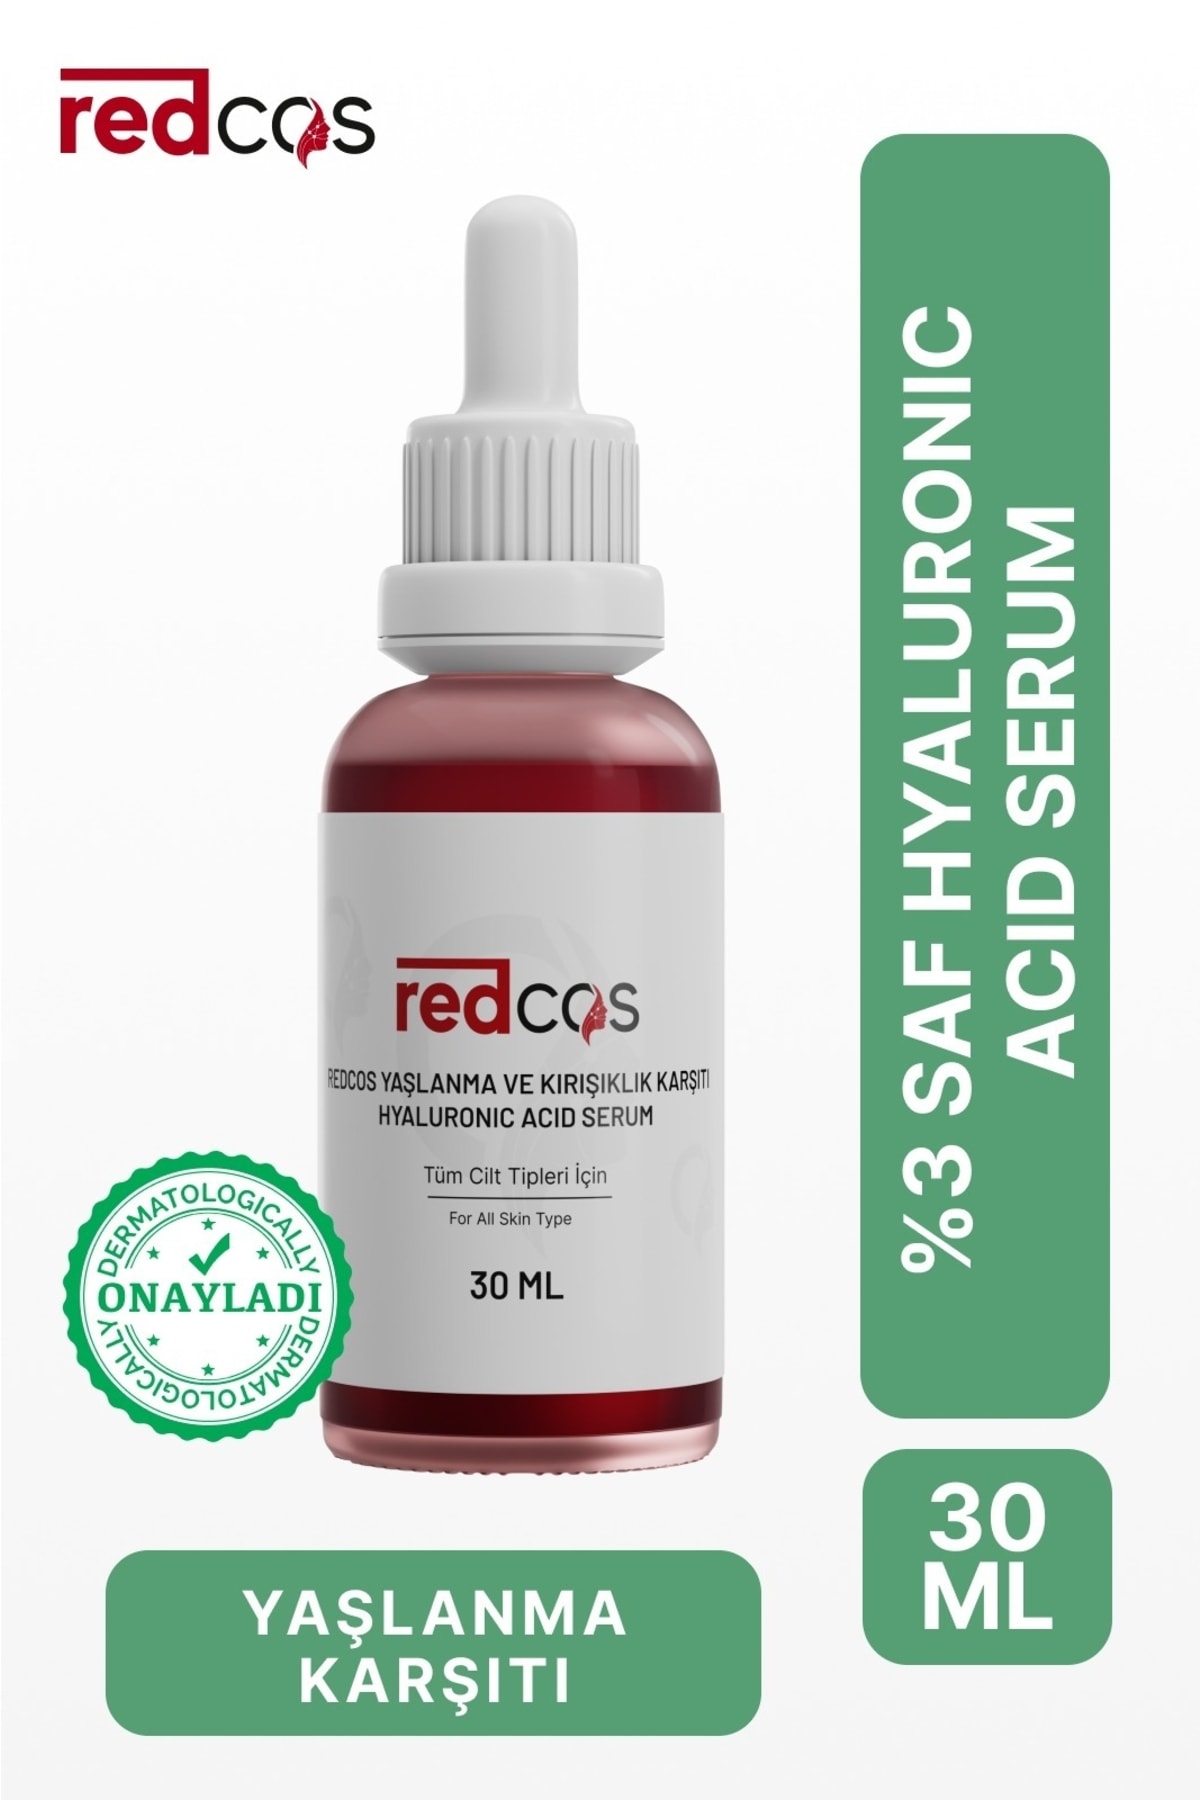 redCOS Yaşlanma Karşıtı Nemlendirici Tüm Cilt Tipleri Için Serum Hyaluronıc Acıd %3 Panthenol Allantoın